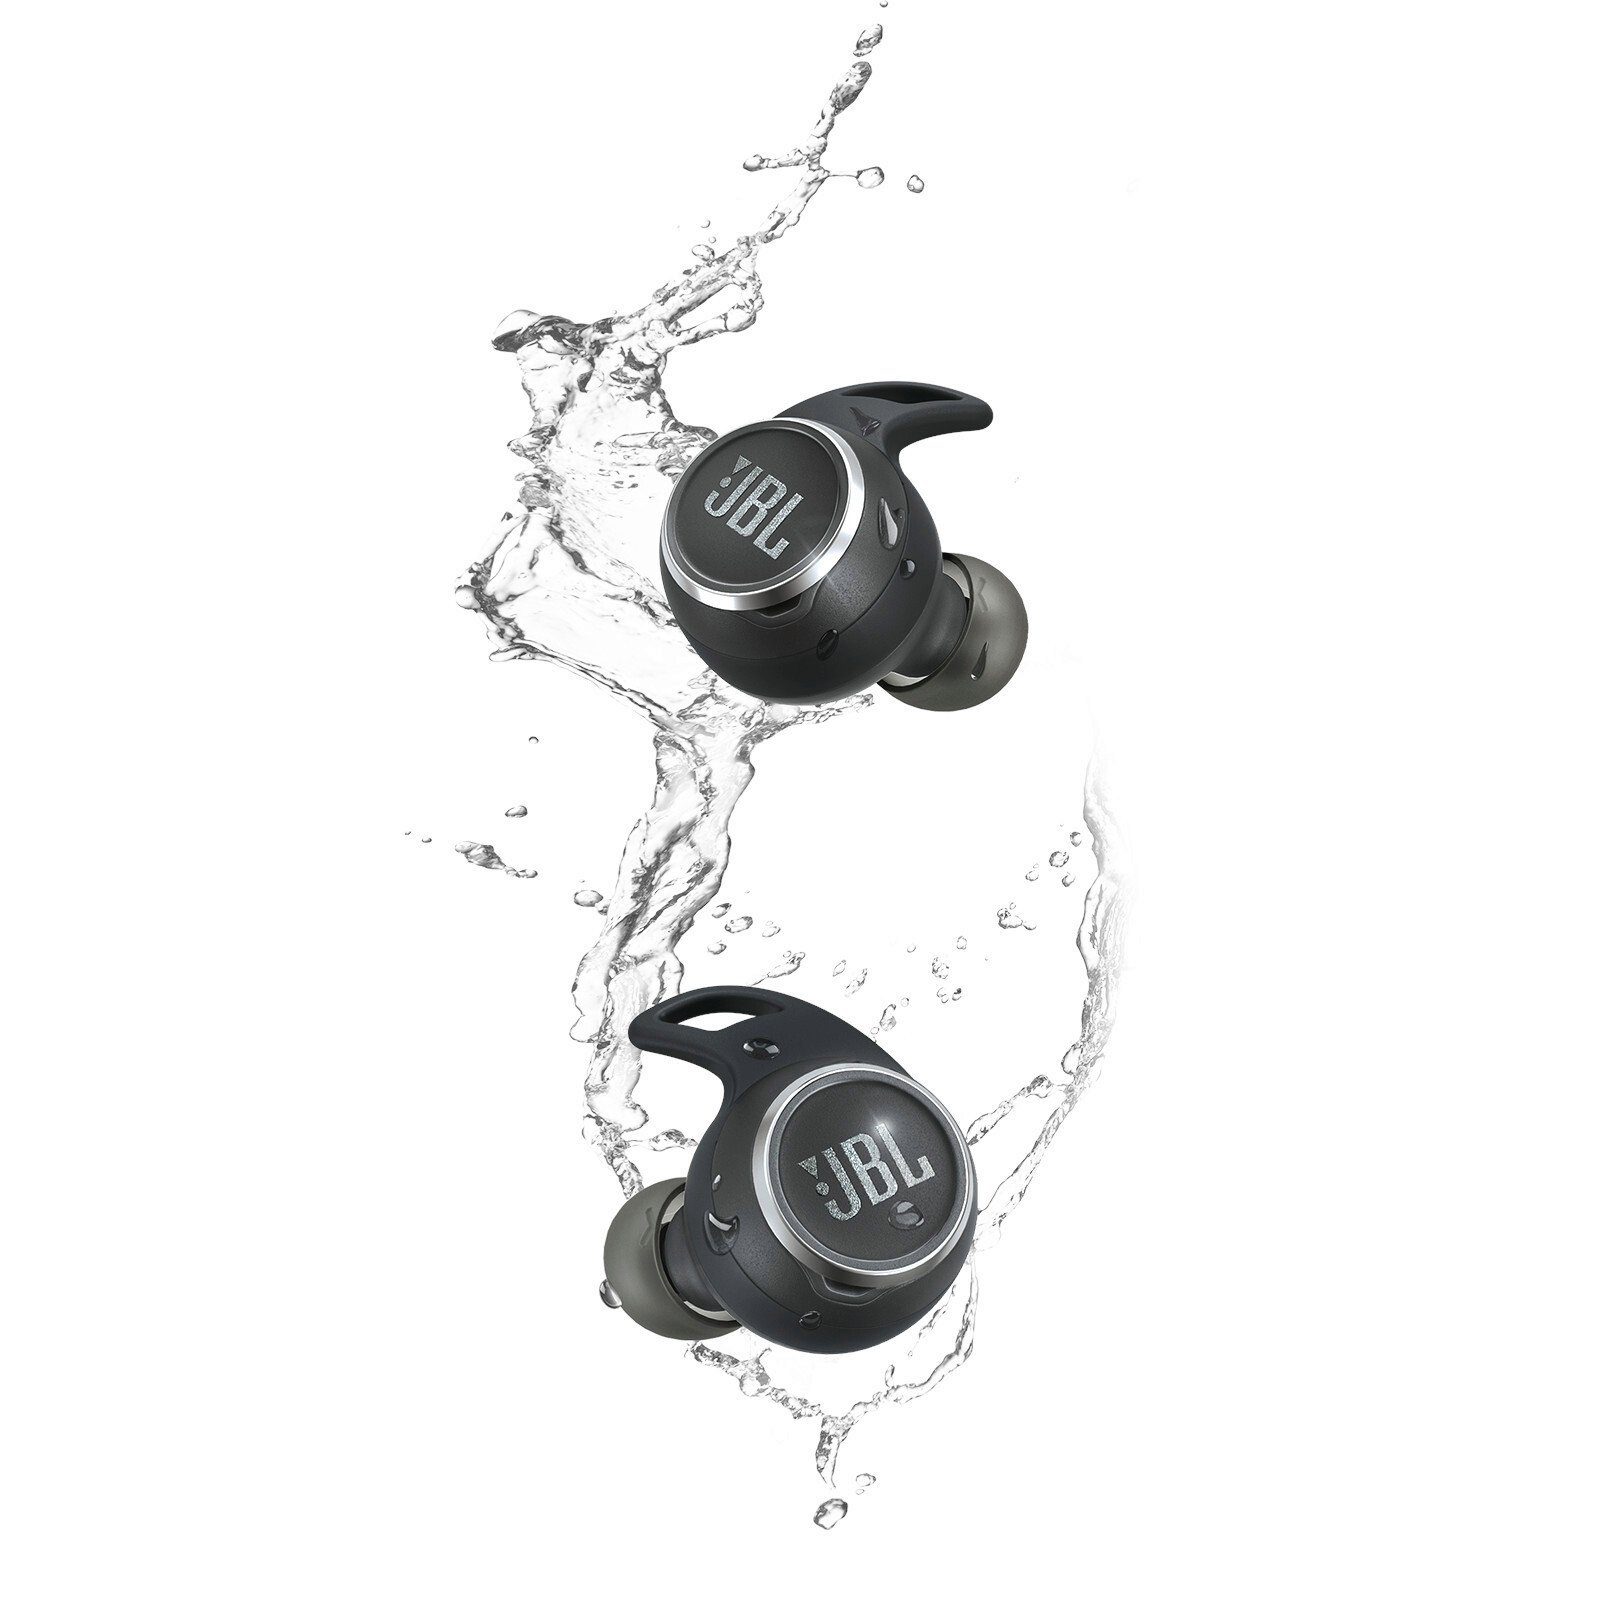 Aero Schwarz JBL Reflect In-Ear-Kopfhörer wireless